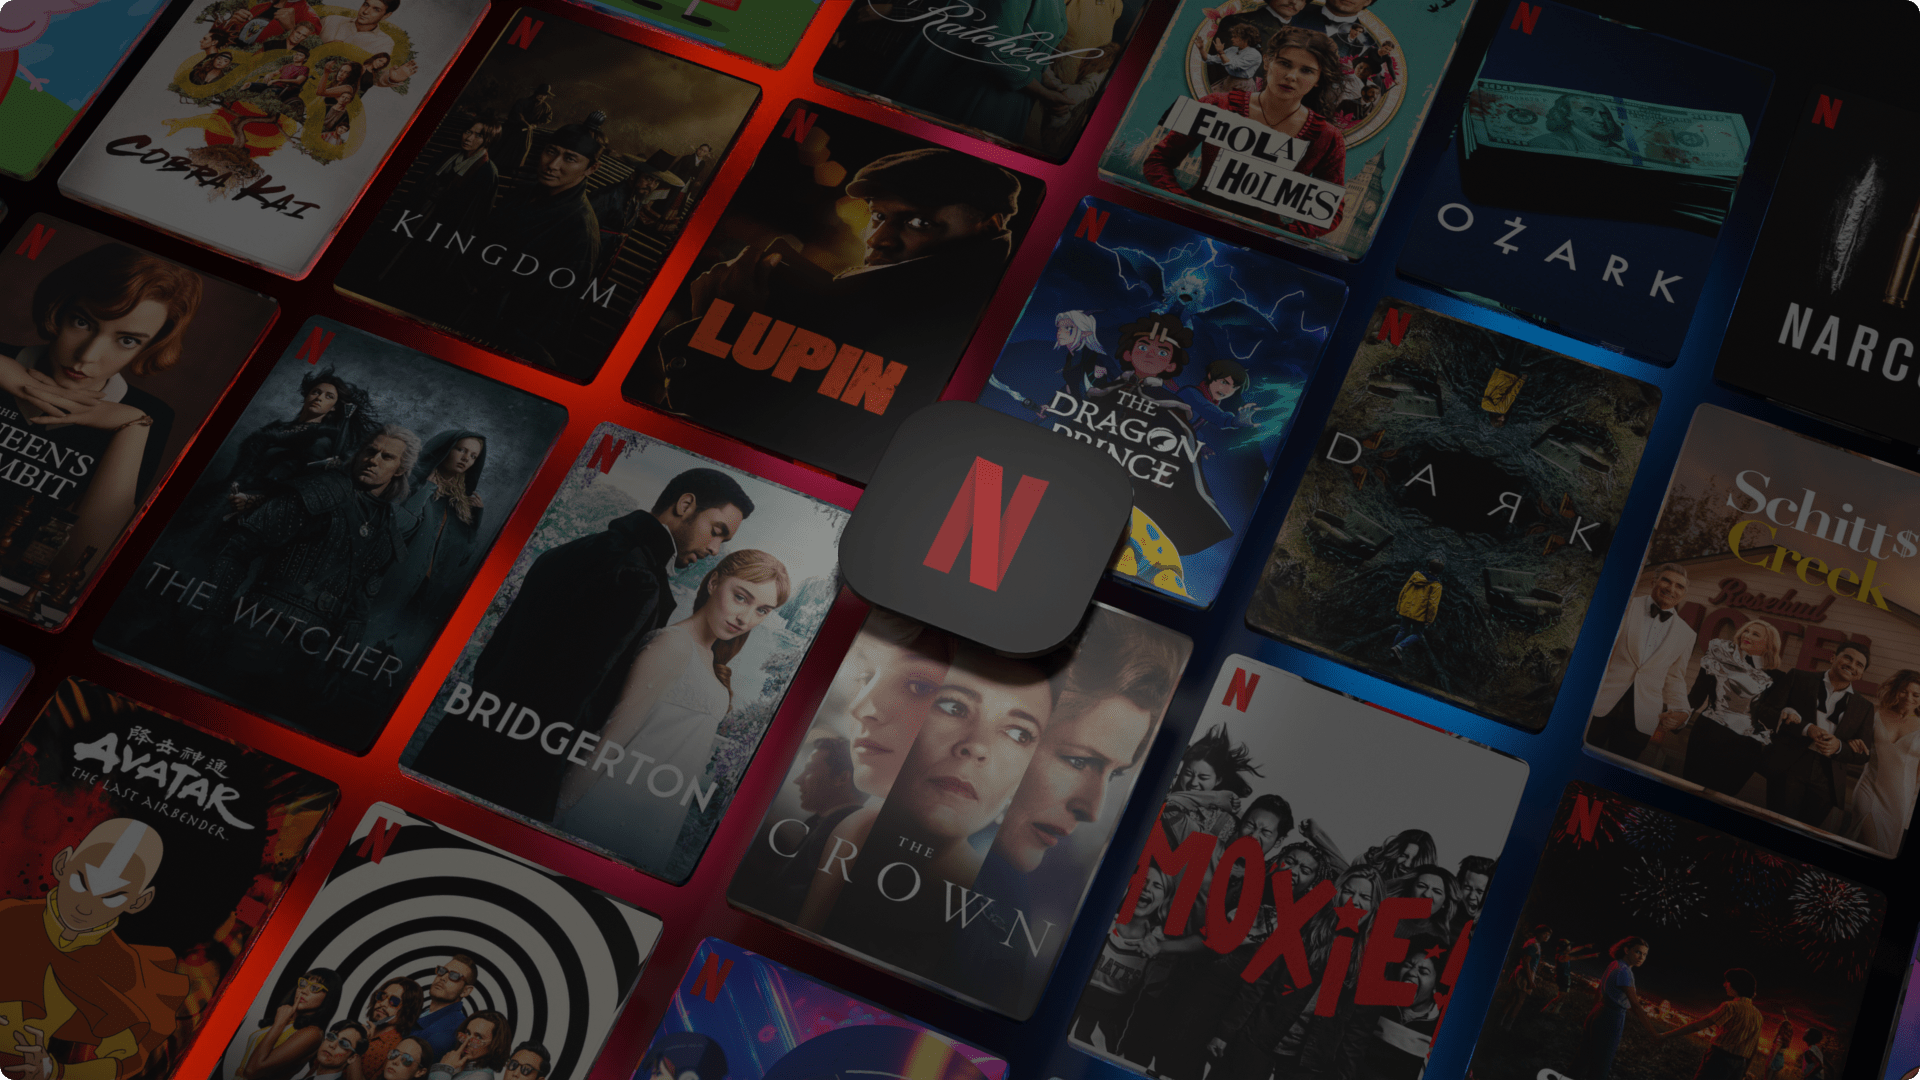 «Контент недоступен в вашем регионе» для Netflix, Hulu и др. Что делать